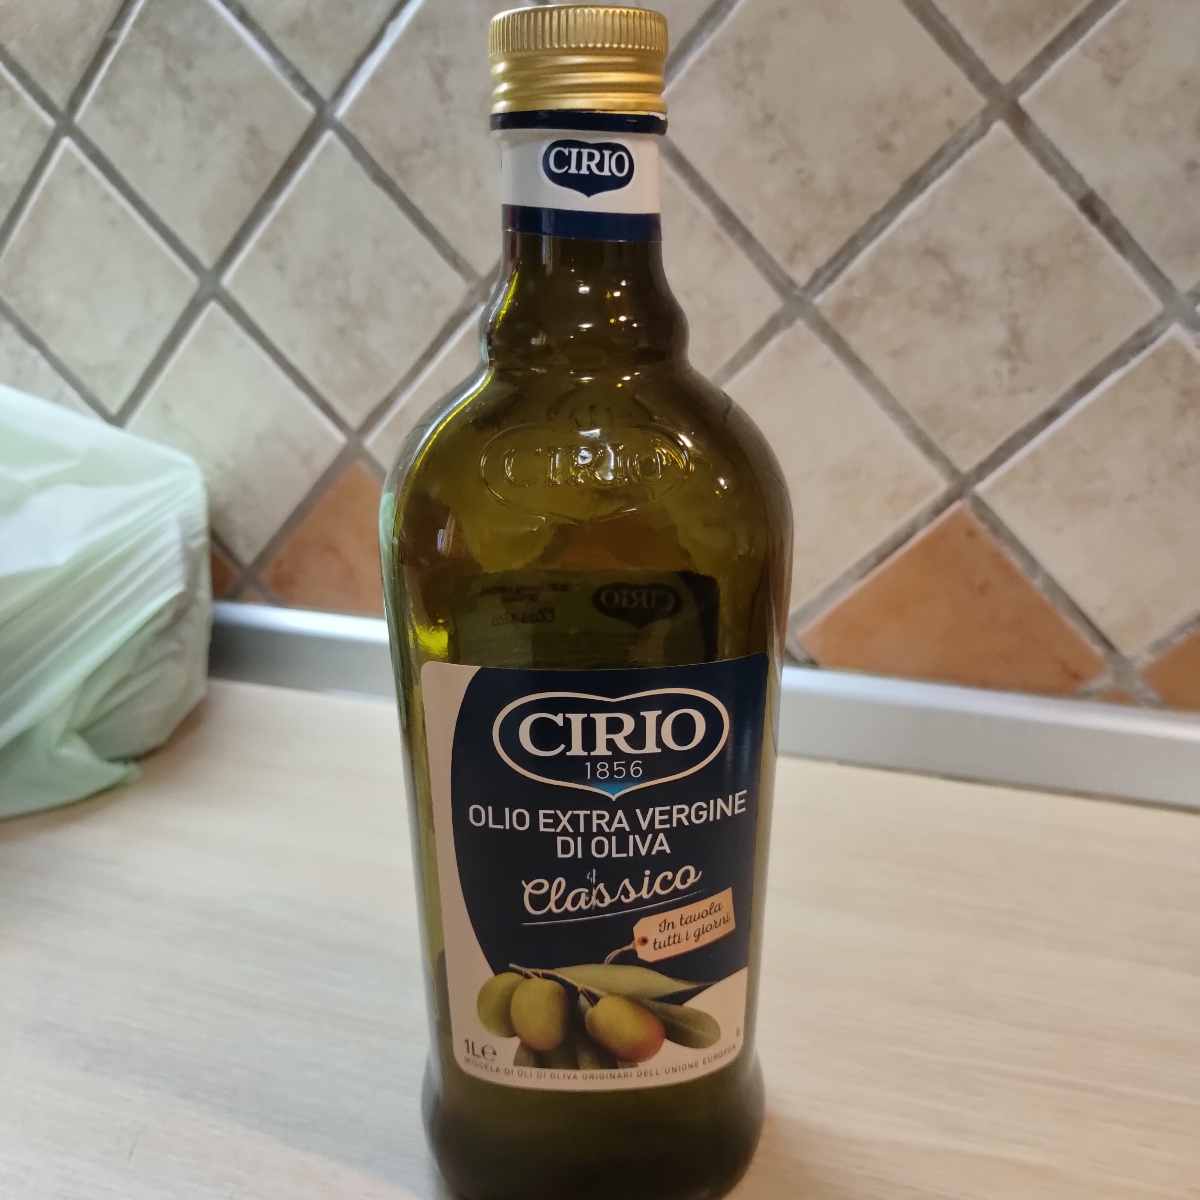 Cirio Olio extra vergine di oliva Reviews | abillion